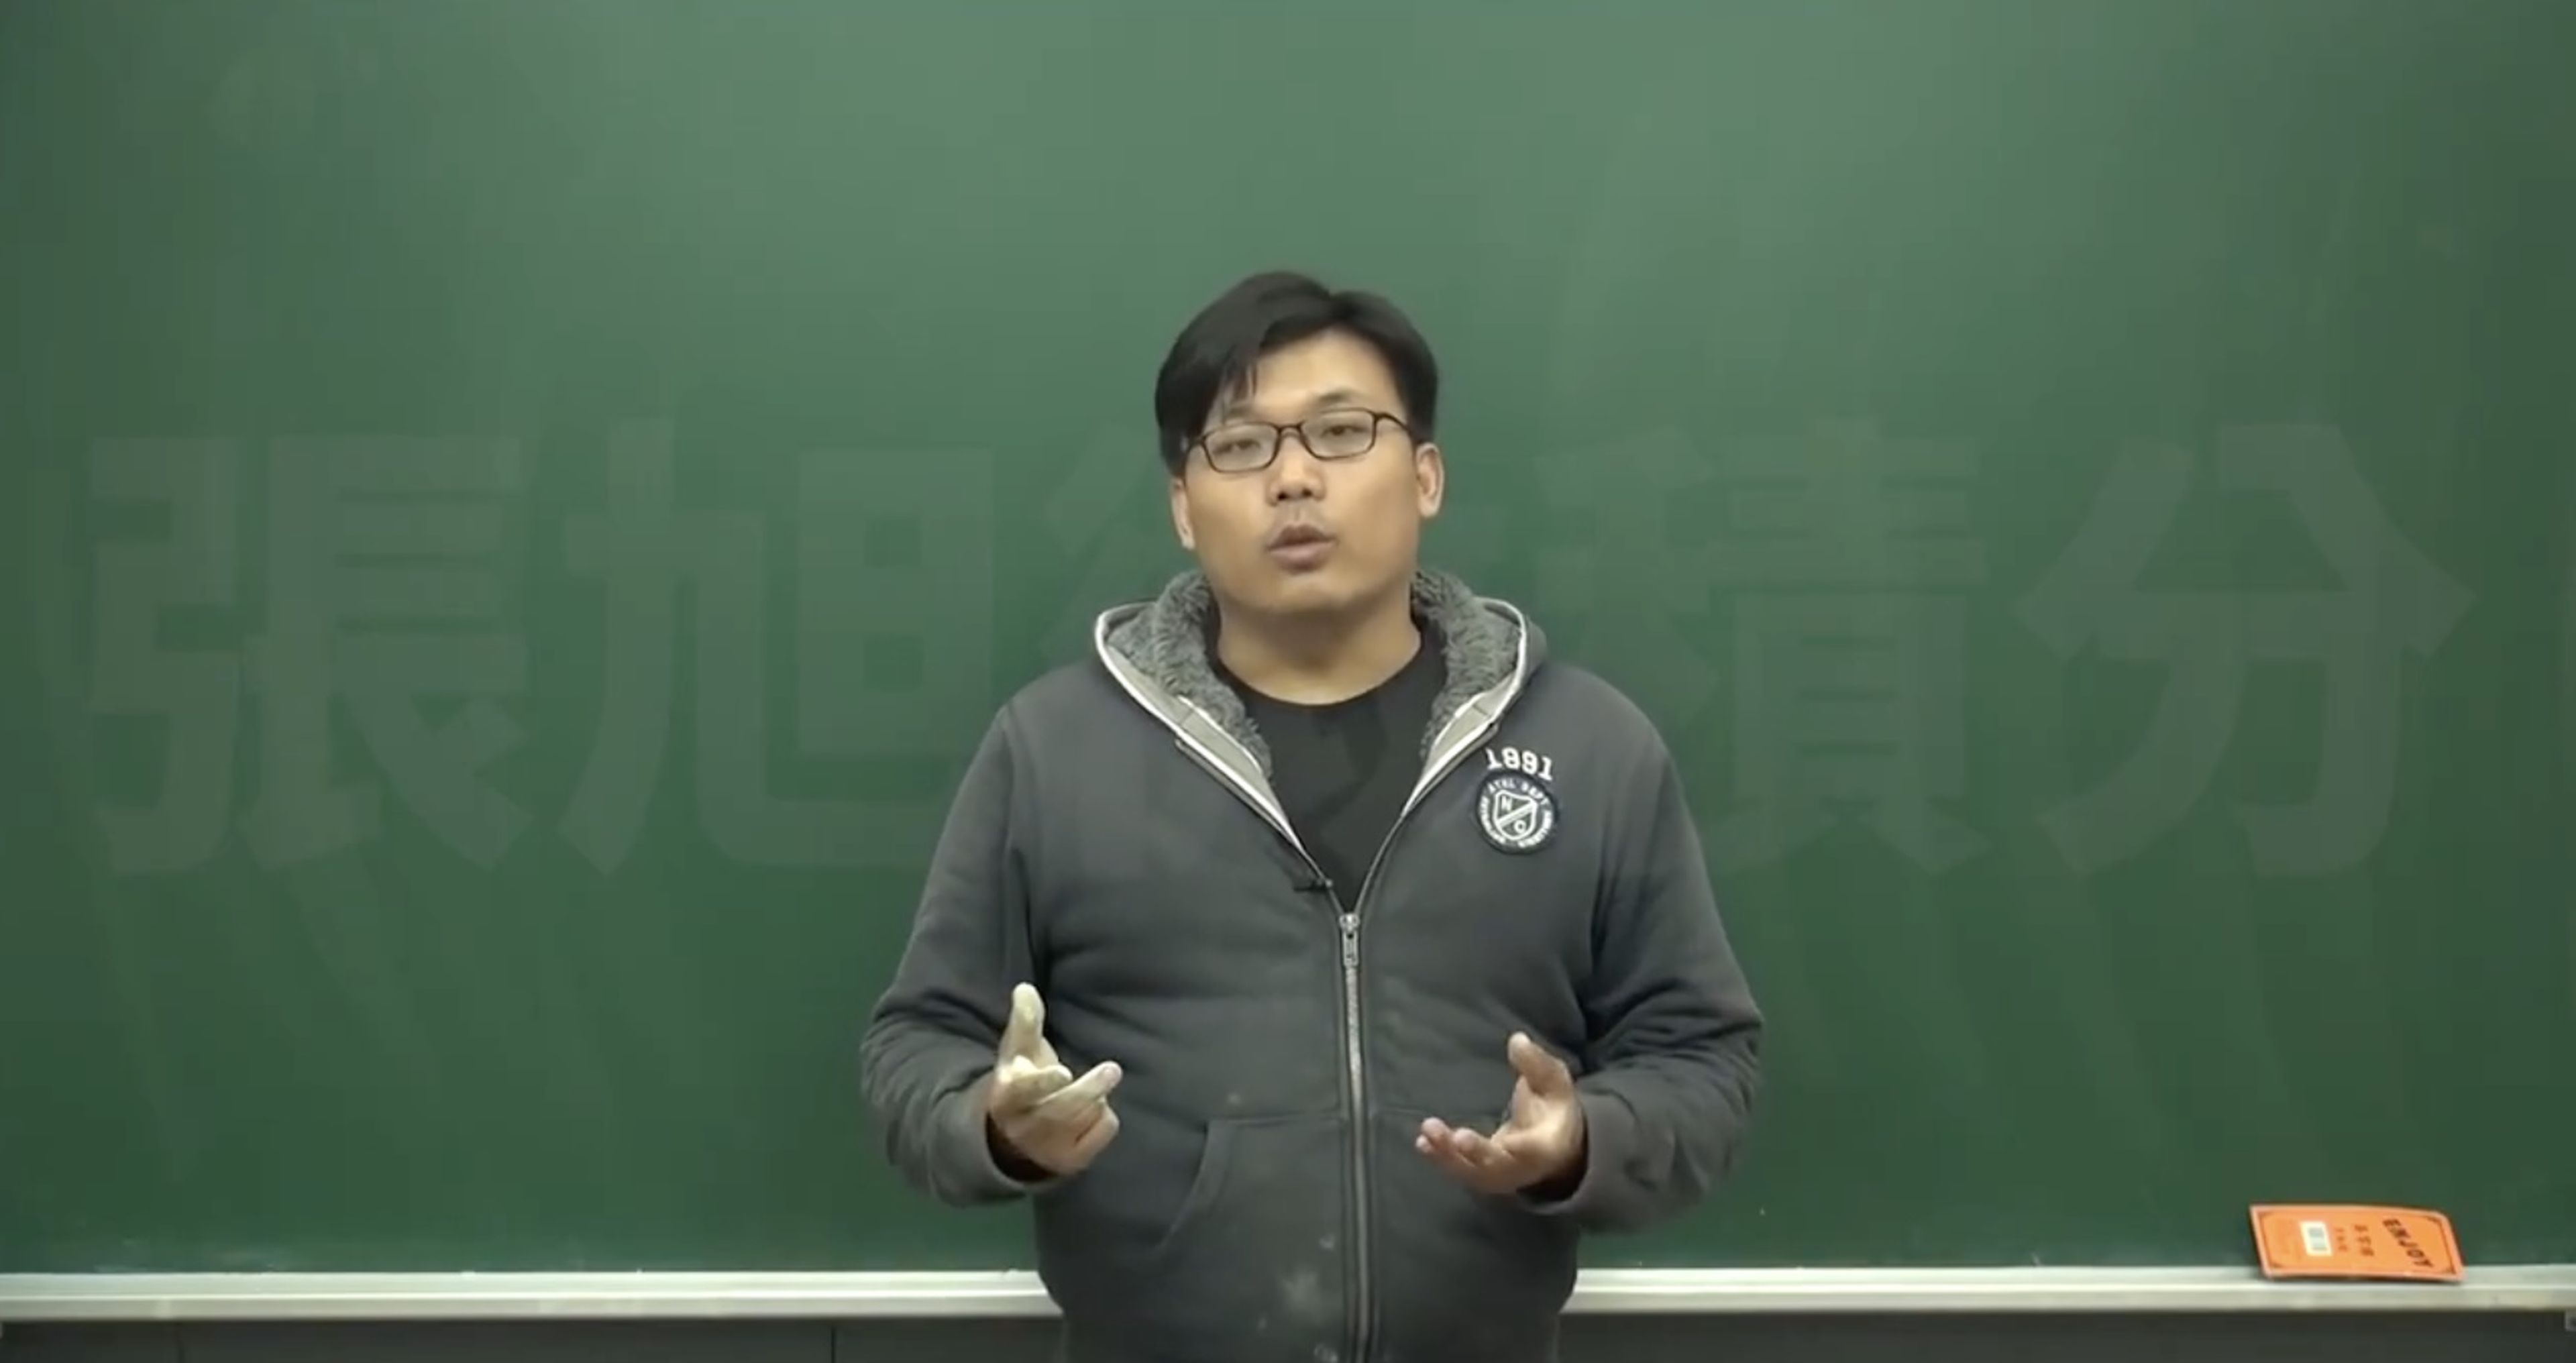 El profesor de matemáticas de Pornhub Changhsu